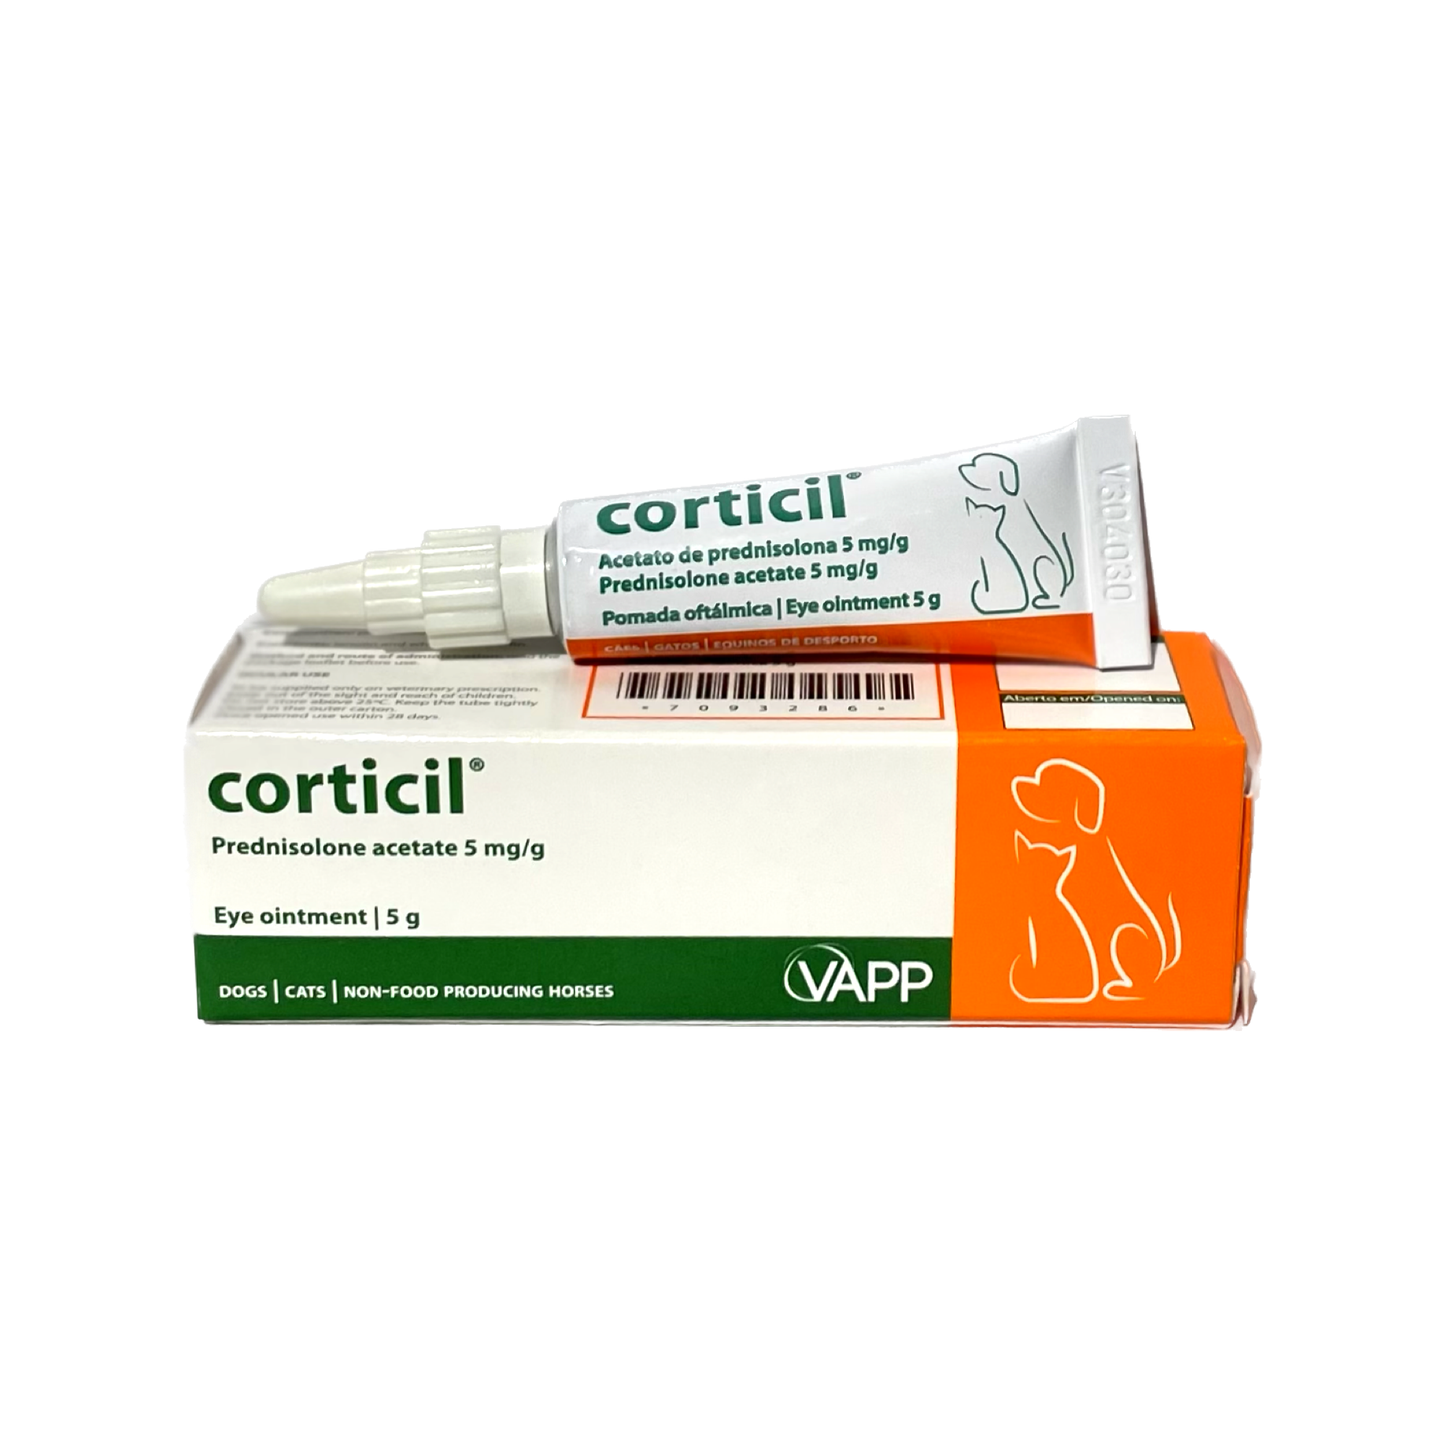 Corticil 5g (Prednisolone)